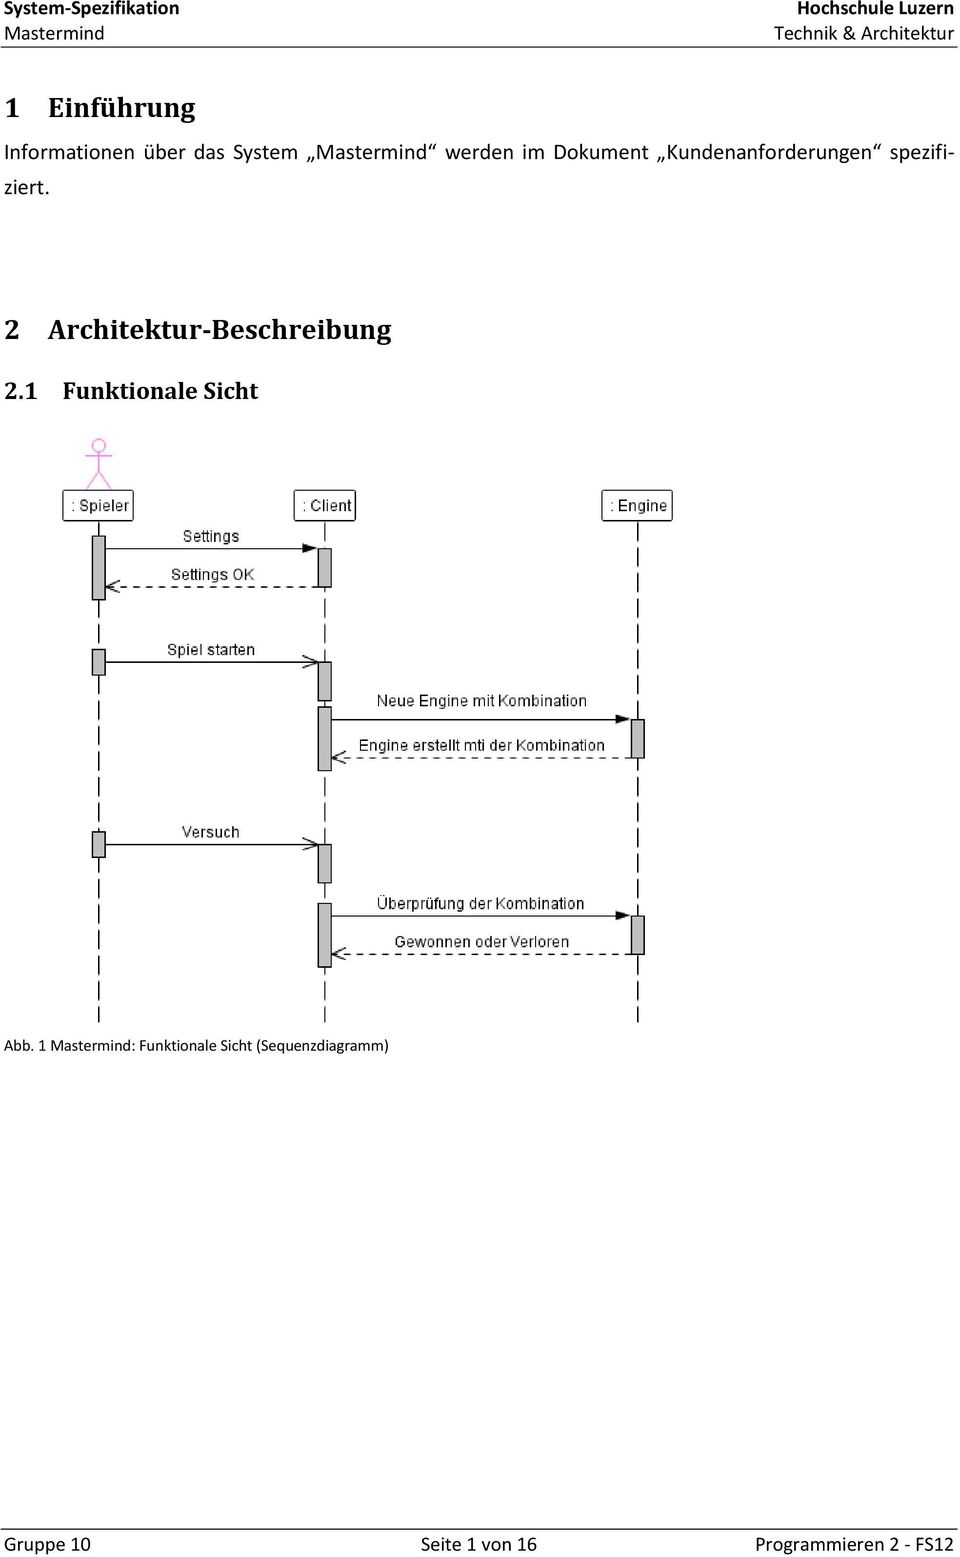 2 Architektur-Beschreibung 2.1 Funktionale Sicht Abb.